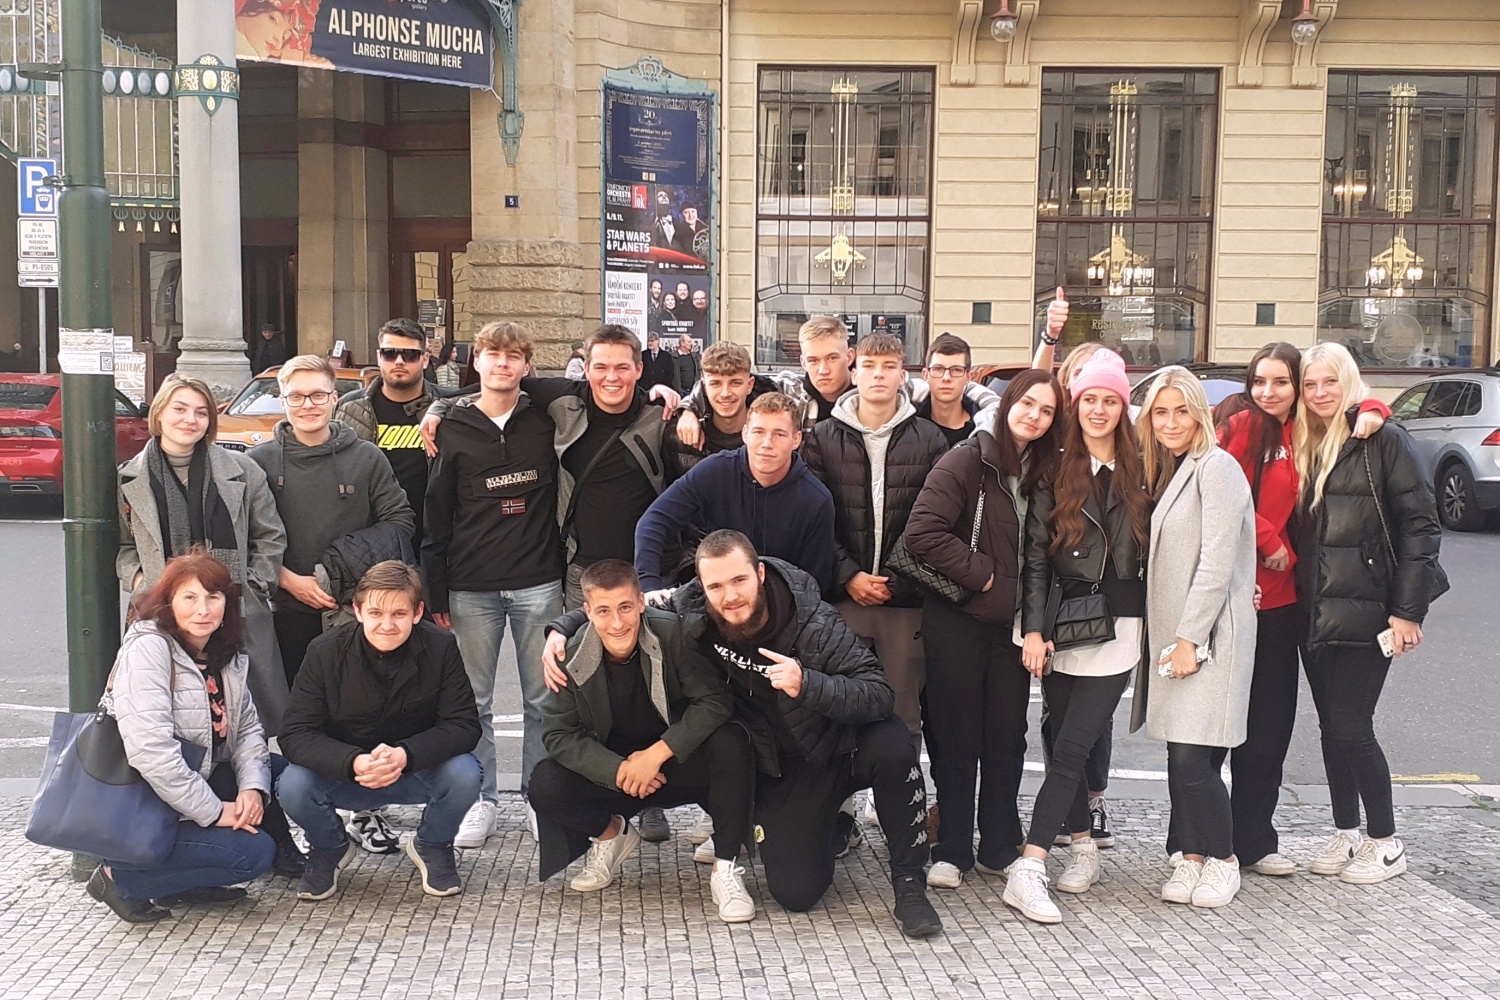 Exkurze Praha